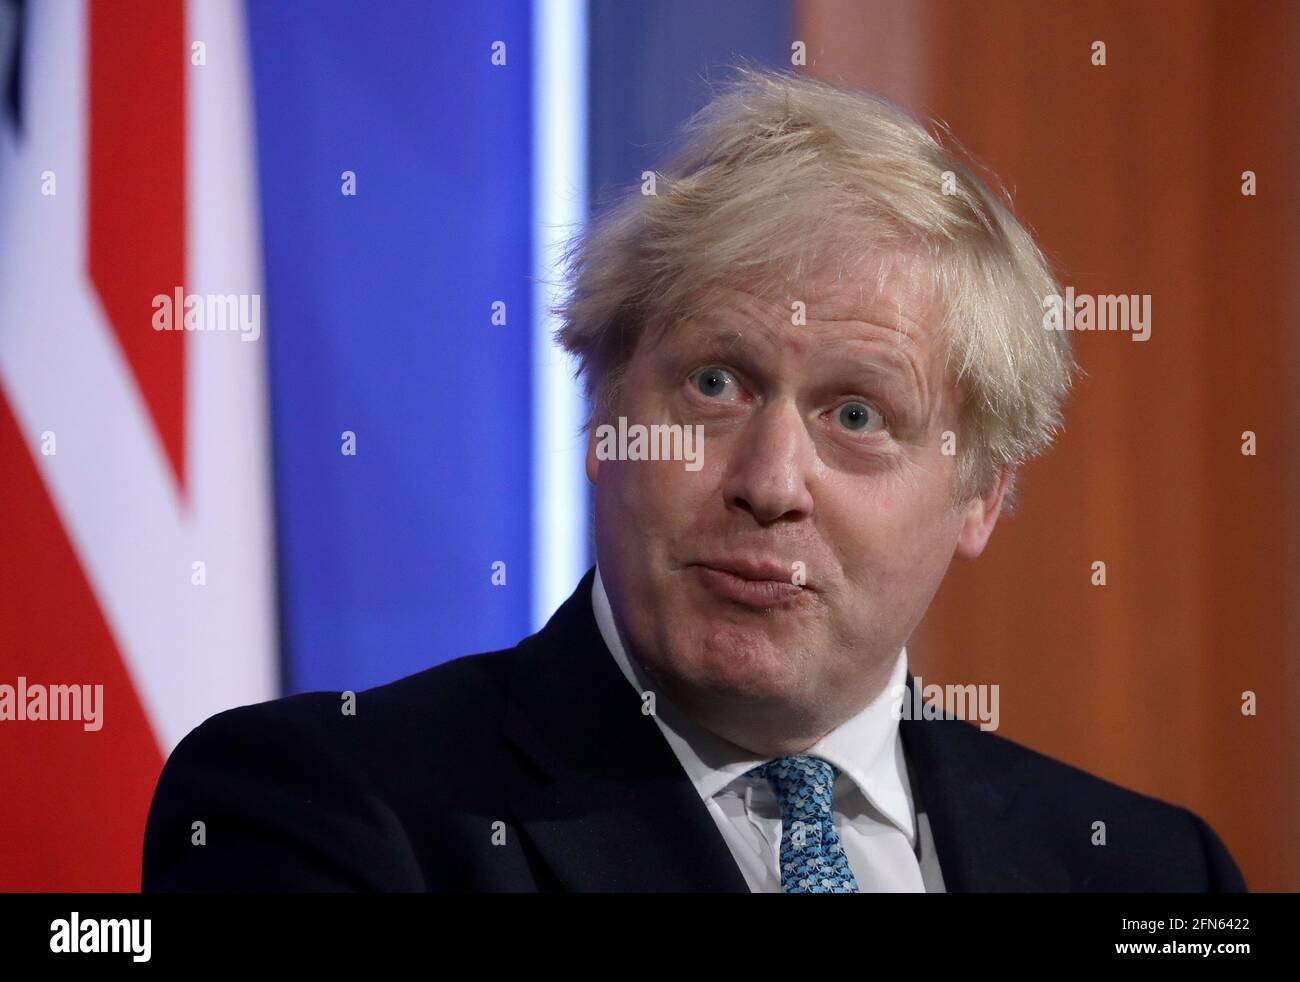 Le Premier ministre Boris Johnson lors d'une réunion d'information à Downing Street, Londres, sur le coronavirus (Covid-19). Date de la photo: Vendredi 14 mai 2021. Banque D'Images